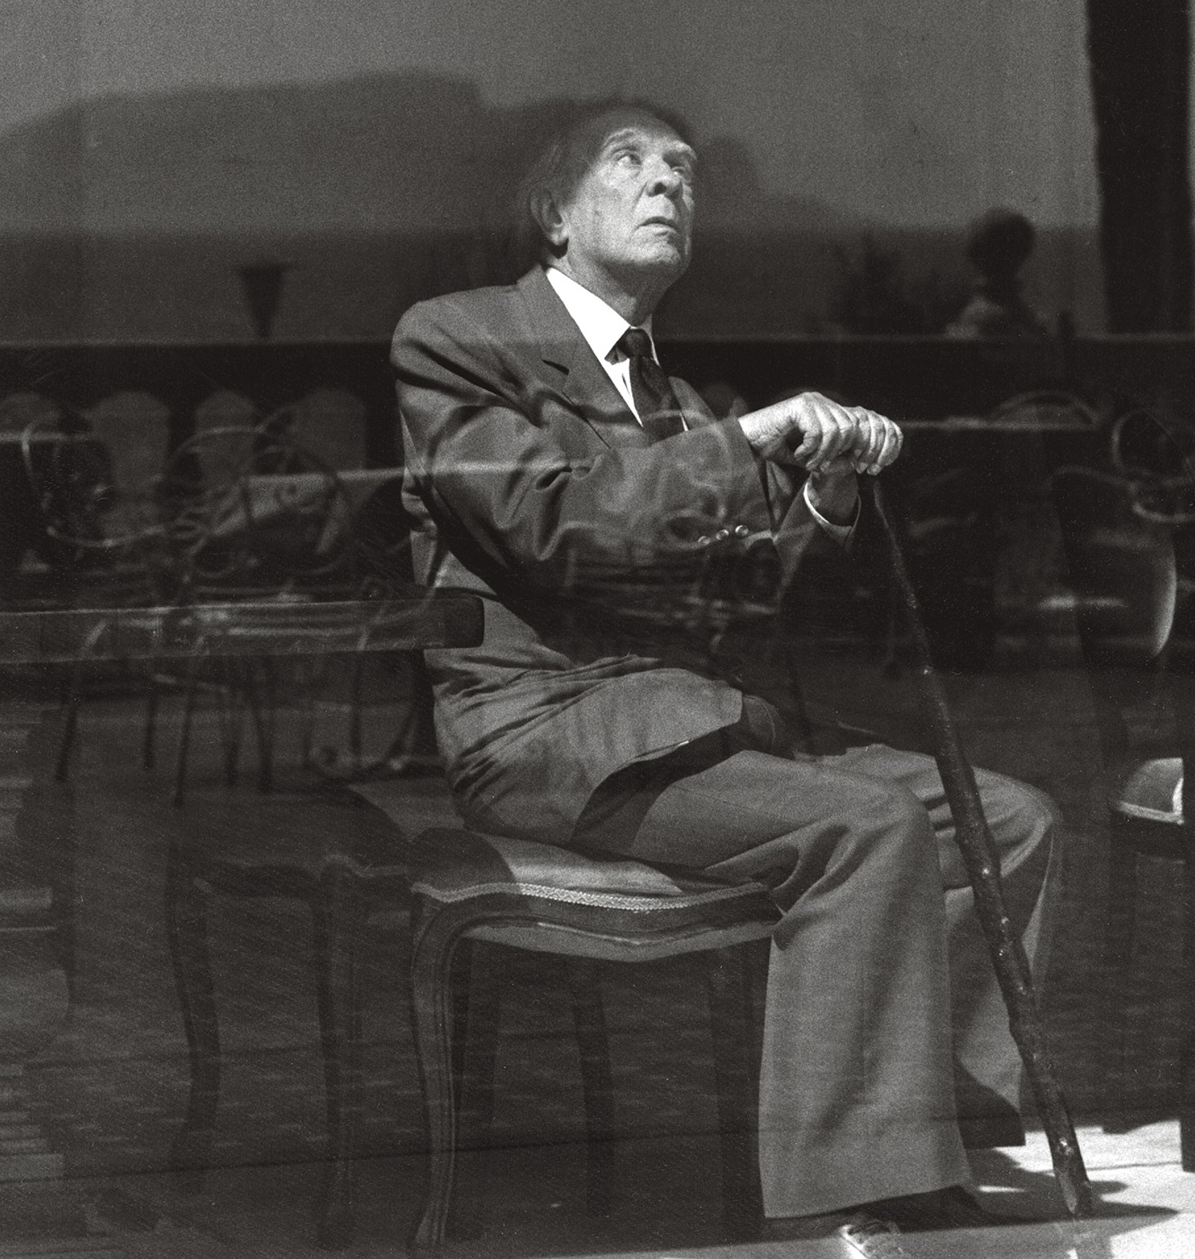 Foto em preto e branco do escritor Jorge Luis Borges. Ele é um homem de cabelos brancos, veste terno e gravata, e está sentado em uma cadeira enquanto segura uma bengala. Está com a cabeça inclinada para trás, olhando para cima